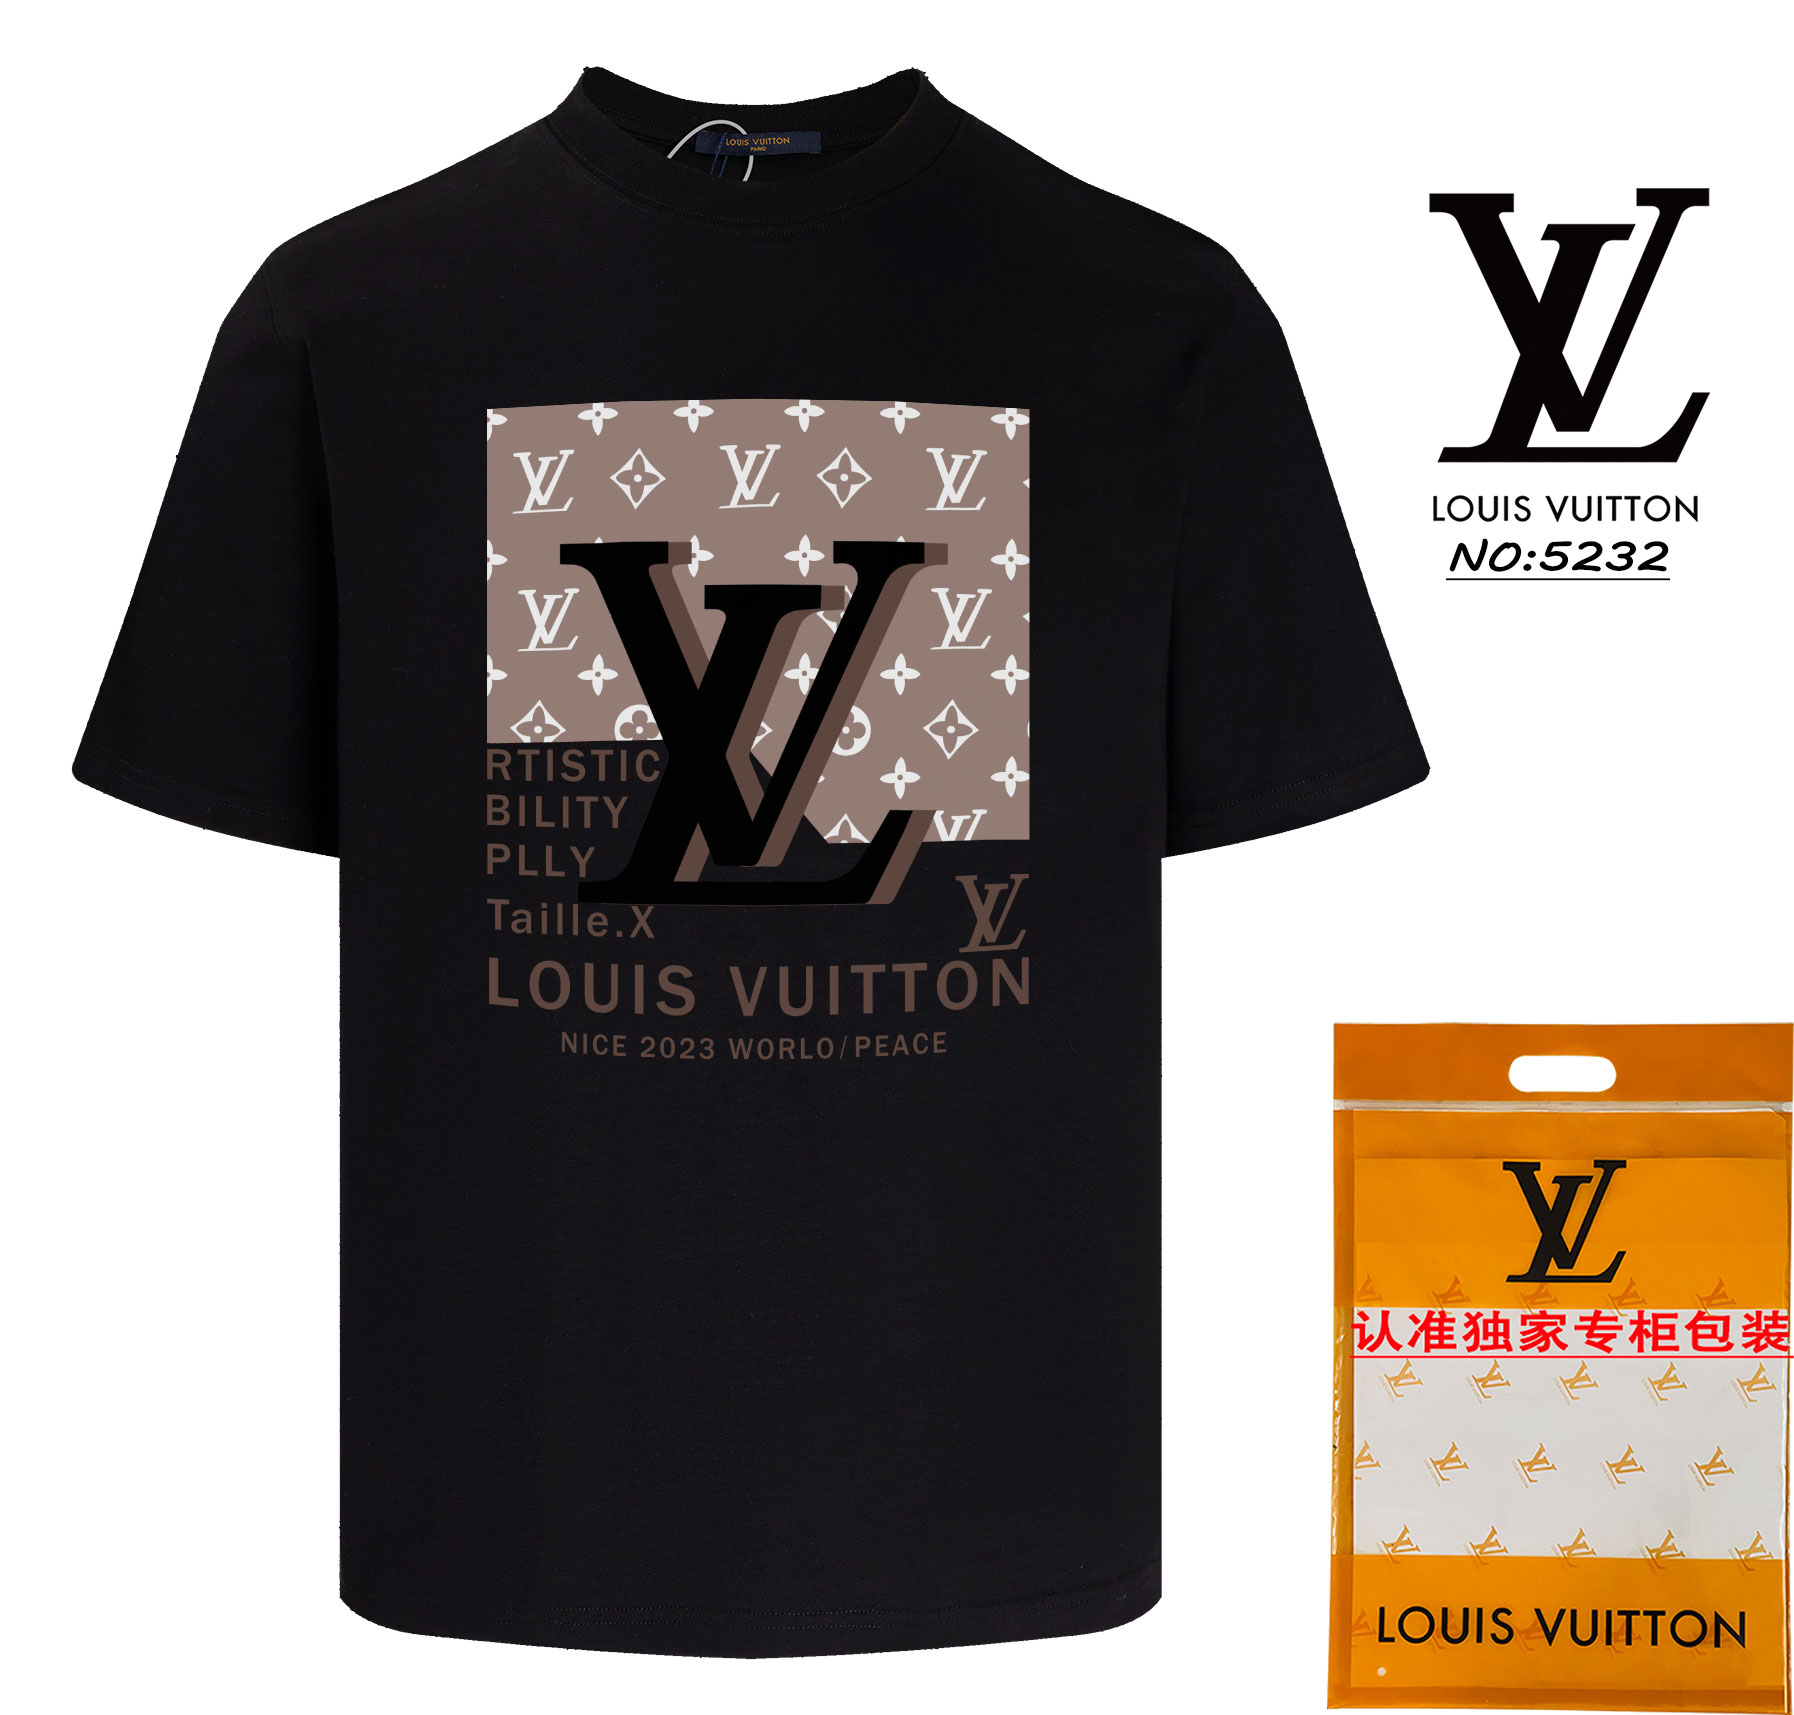 Top 1:1 Replica
 Louis Vuitton Sale
 Clothing T-Shirt Apricot Color Black White Unisex Short Sleeve